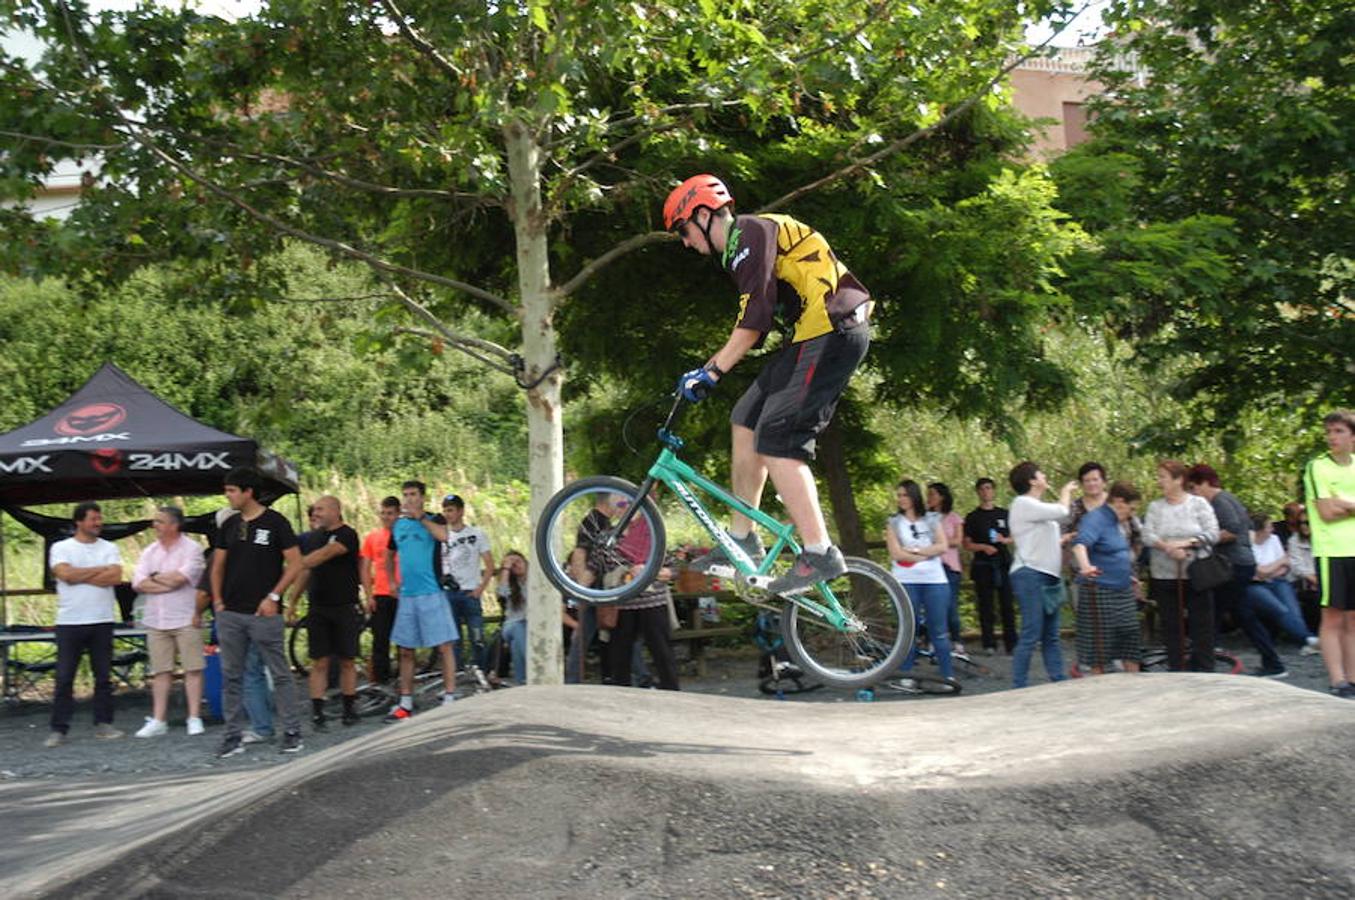 El pasado sábado se inauguró en Igea un circuito pump track para bicicletas con las que realizar saltos y piruetas. El medallista olímpico Carlos Coloma inauguró las instalaciones denominadas Dyno Pumptrack Igea junto al parque del río Linares. 